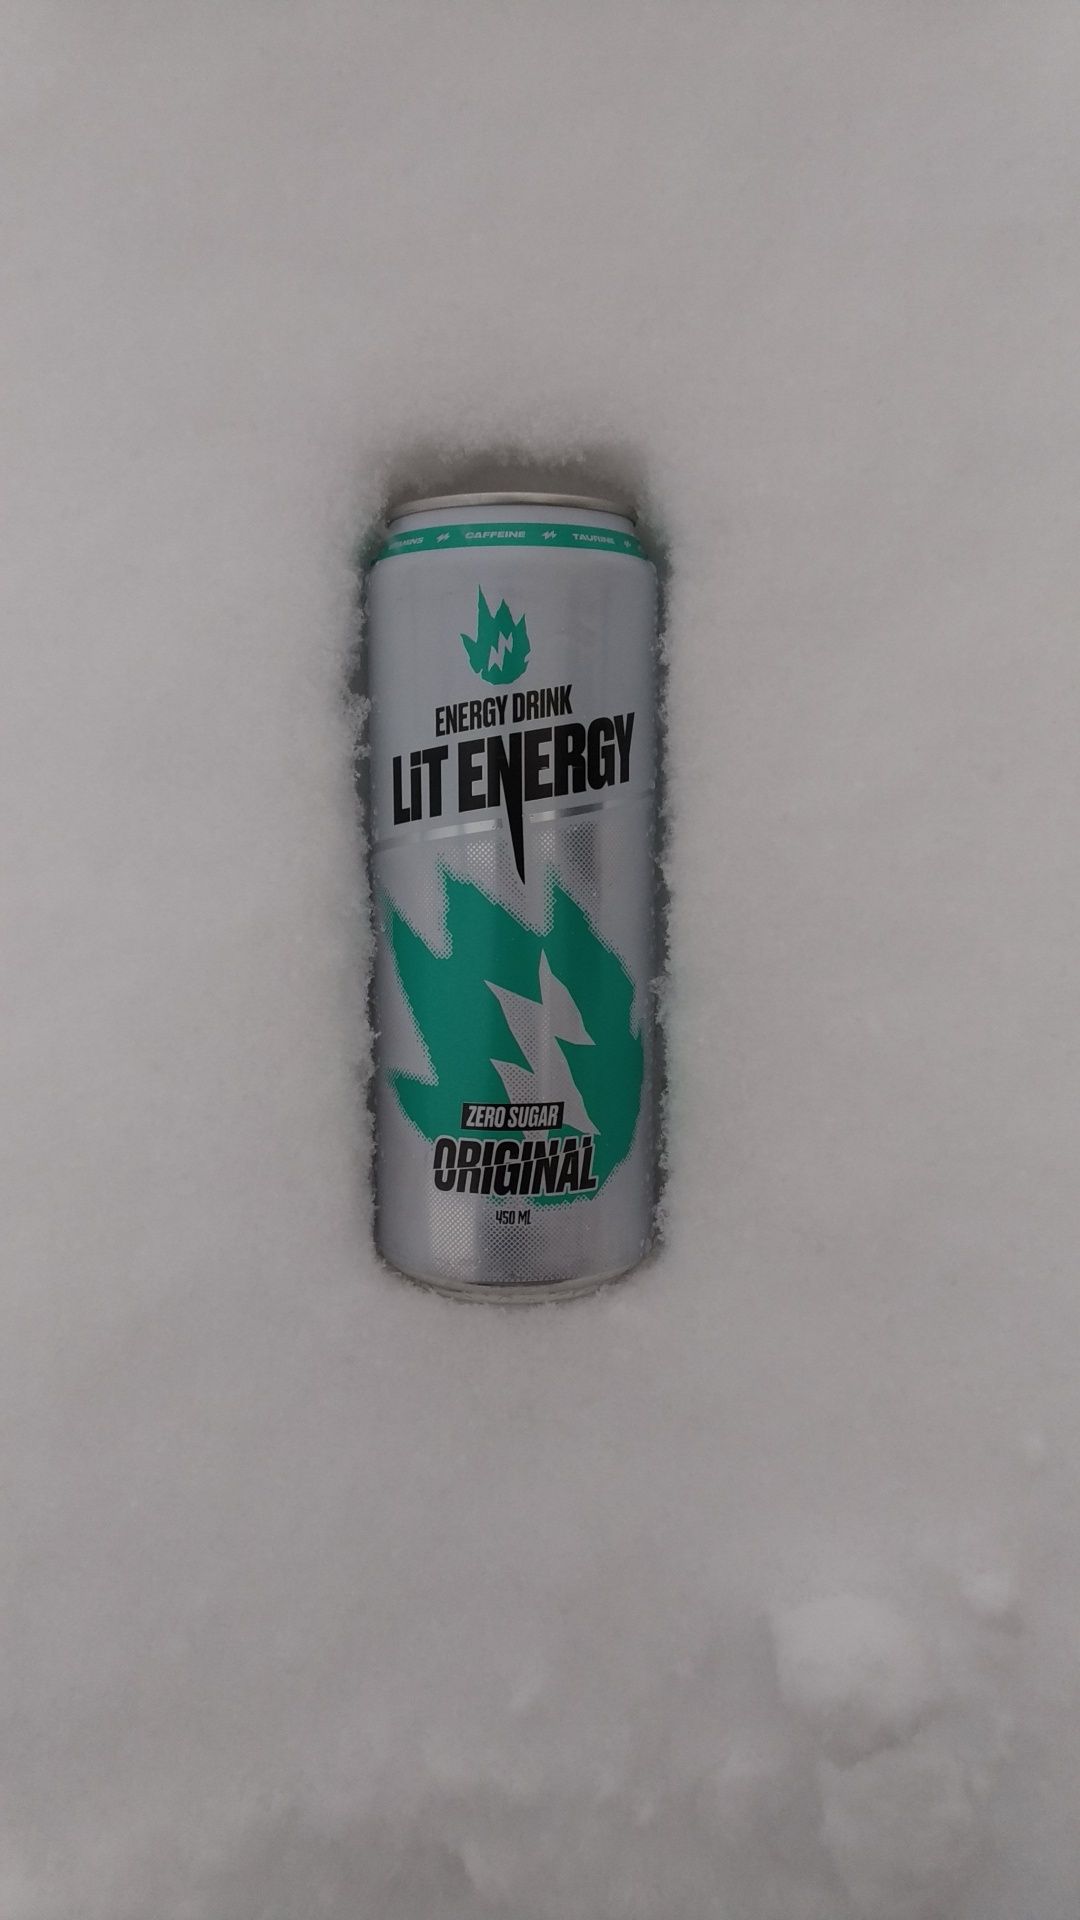 Lit Energy Энергетический напиток лит Энерджи